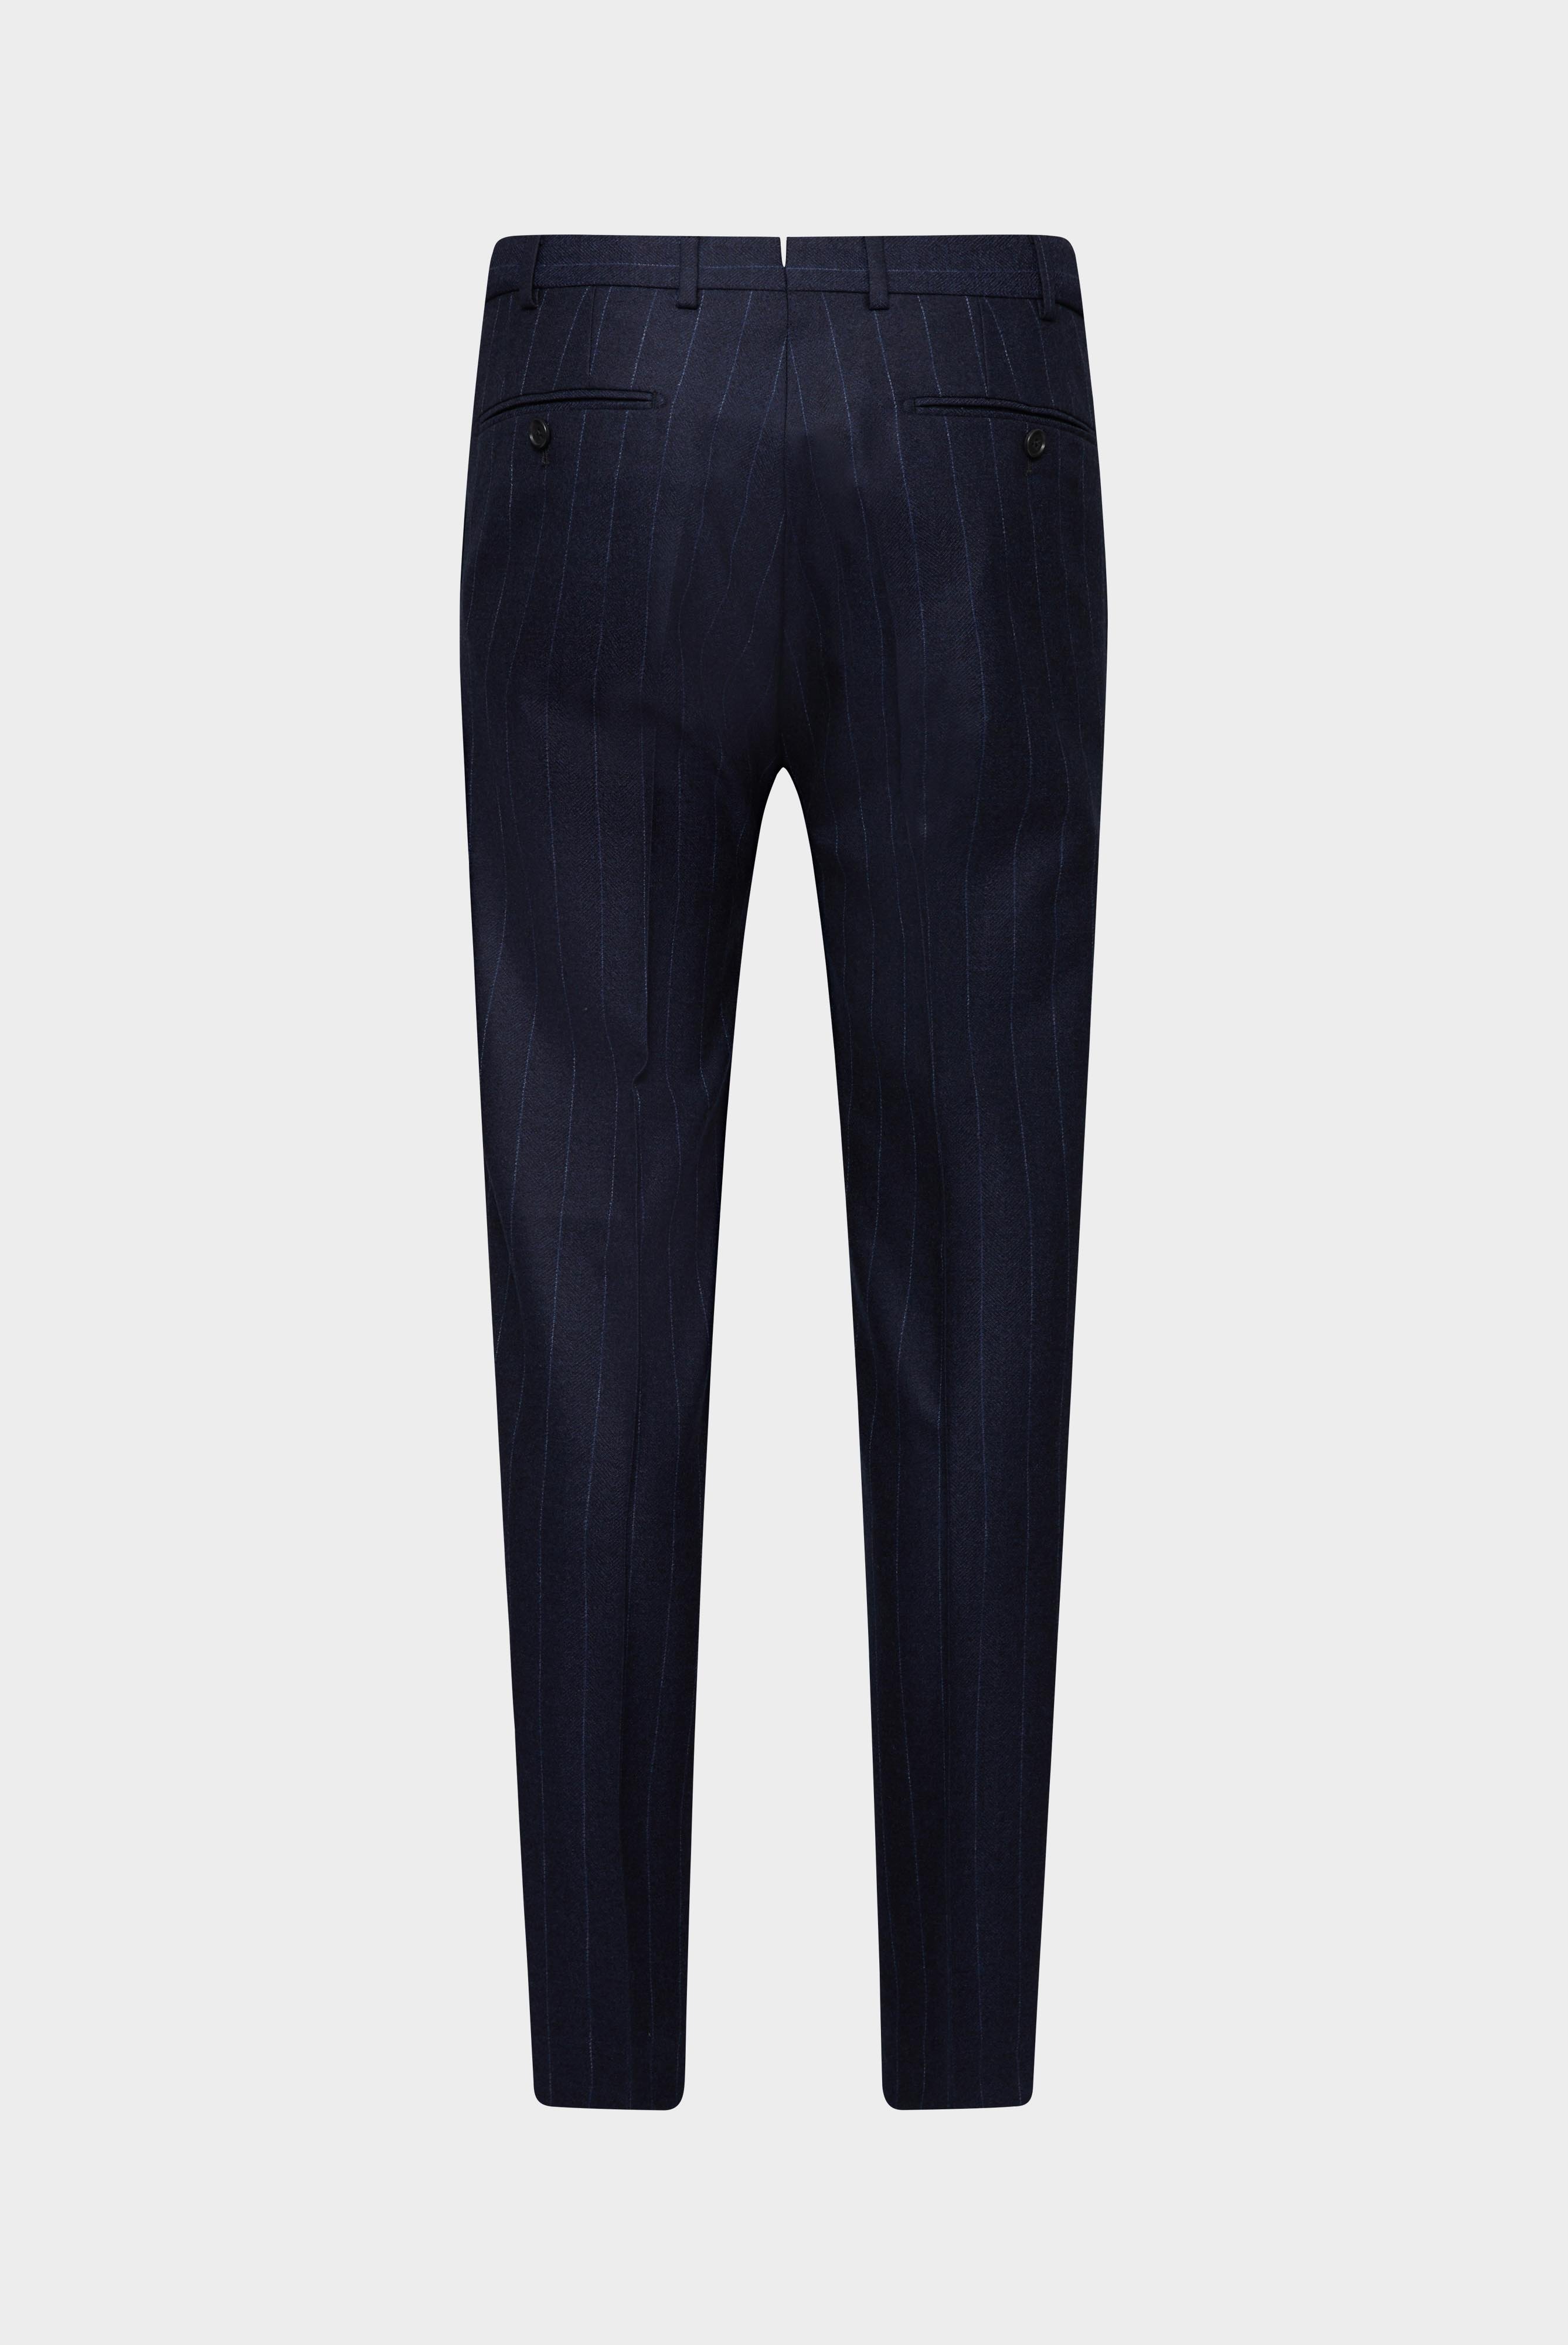 Jeans & Hosen+Hose mit Bundfalte aus Woll-Flanell Slim Fit+20.7854.16.H01585.790.46